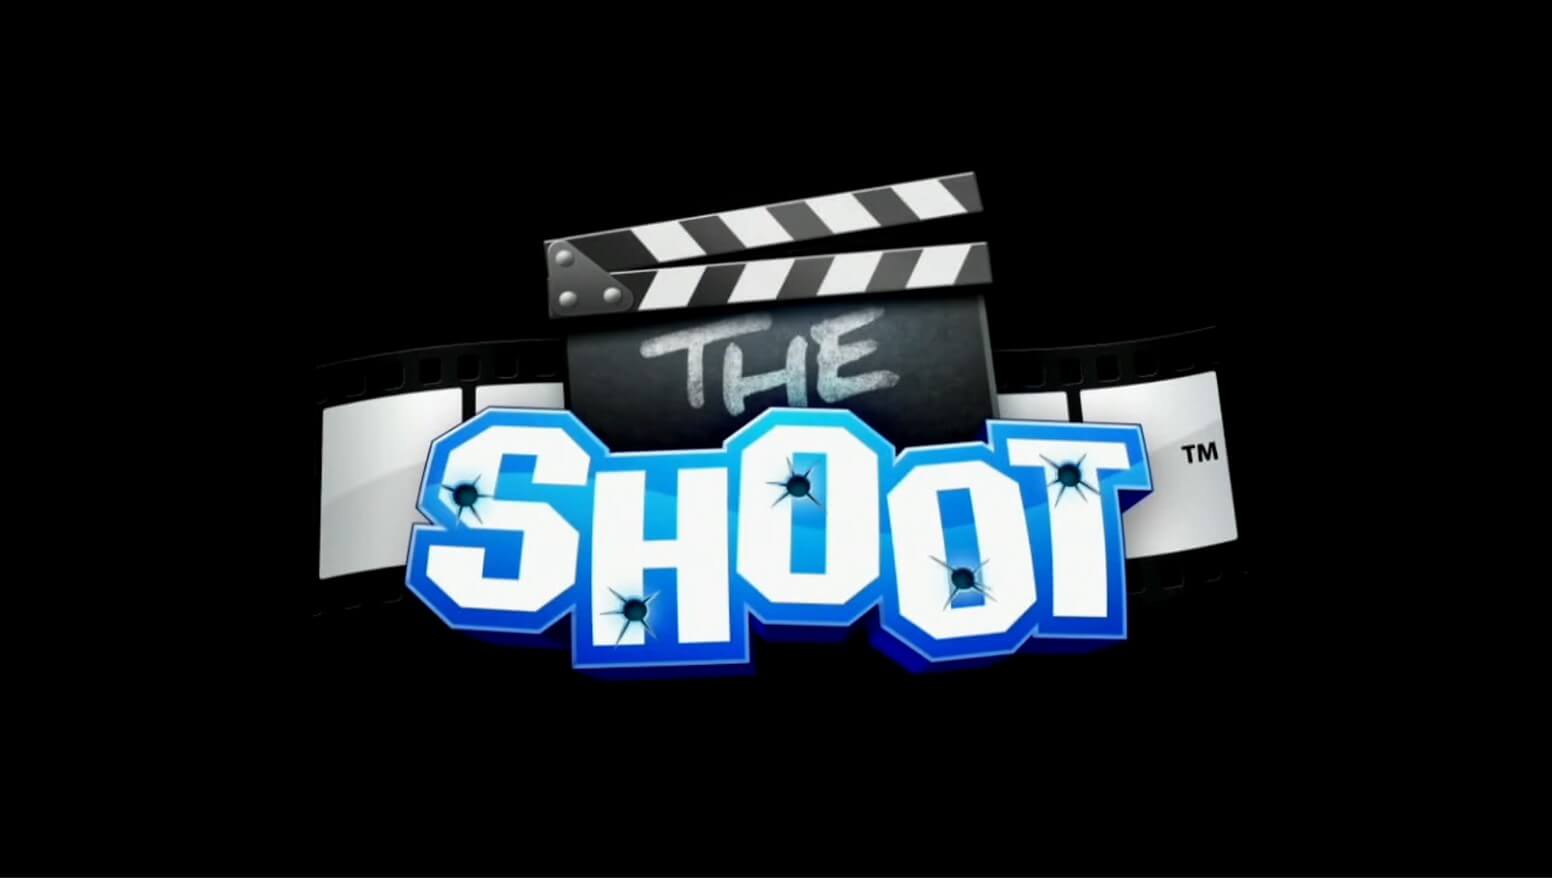 The Shoot - геймплей игры на PlayStation 3